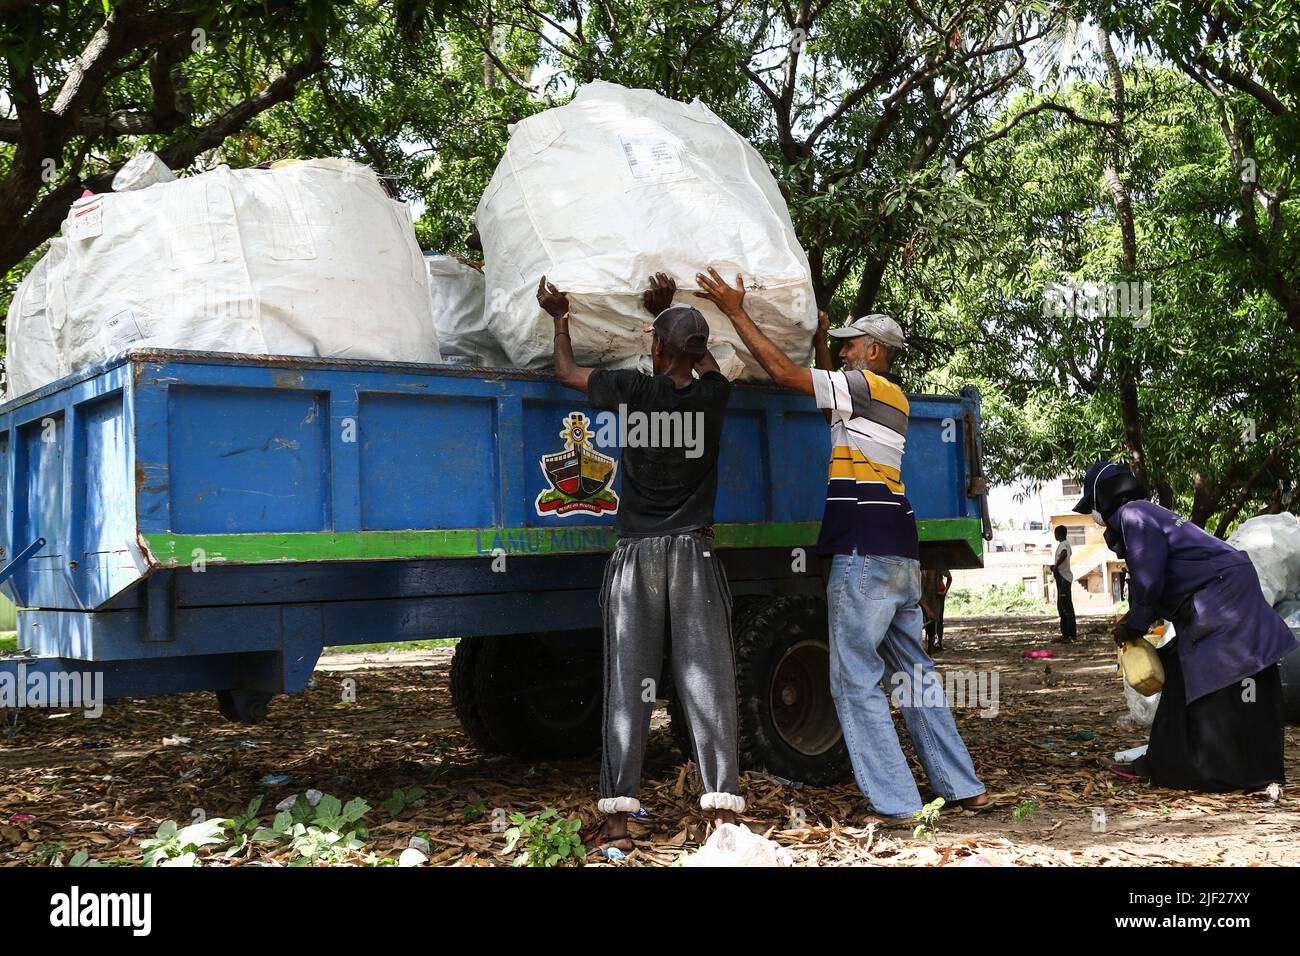 26 de junio de 2022, Mombasa, Kenia: Los miembros de un grupo ambiental comunitario, Weka Lamu Safi (Mantener Lamu Limpio), cargan en un remolque de tractor una semana de recolección de residuos plásticos recogidos en la isla de Lamu antes de venderlos a la organización FlipFlopi para su reciclaje. La Organización FlipFlopi en 2019 construyó un velero casi enteramente de residuos plásticos reciclados recolectados en las orillas del Océano Índico. La contaminación causada por las actividades humanas ha afectado negativamente a los océanos. El presidente keniano Uhuru Kenyatta, en su discurso durante la conferencia oceánica en curso en Lisboa, Portugal, dijo que el plástico pol Foto de stock